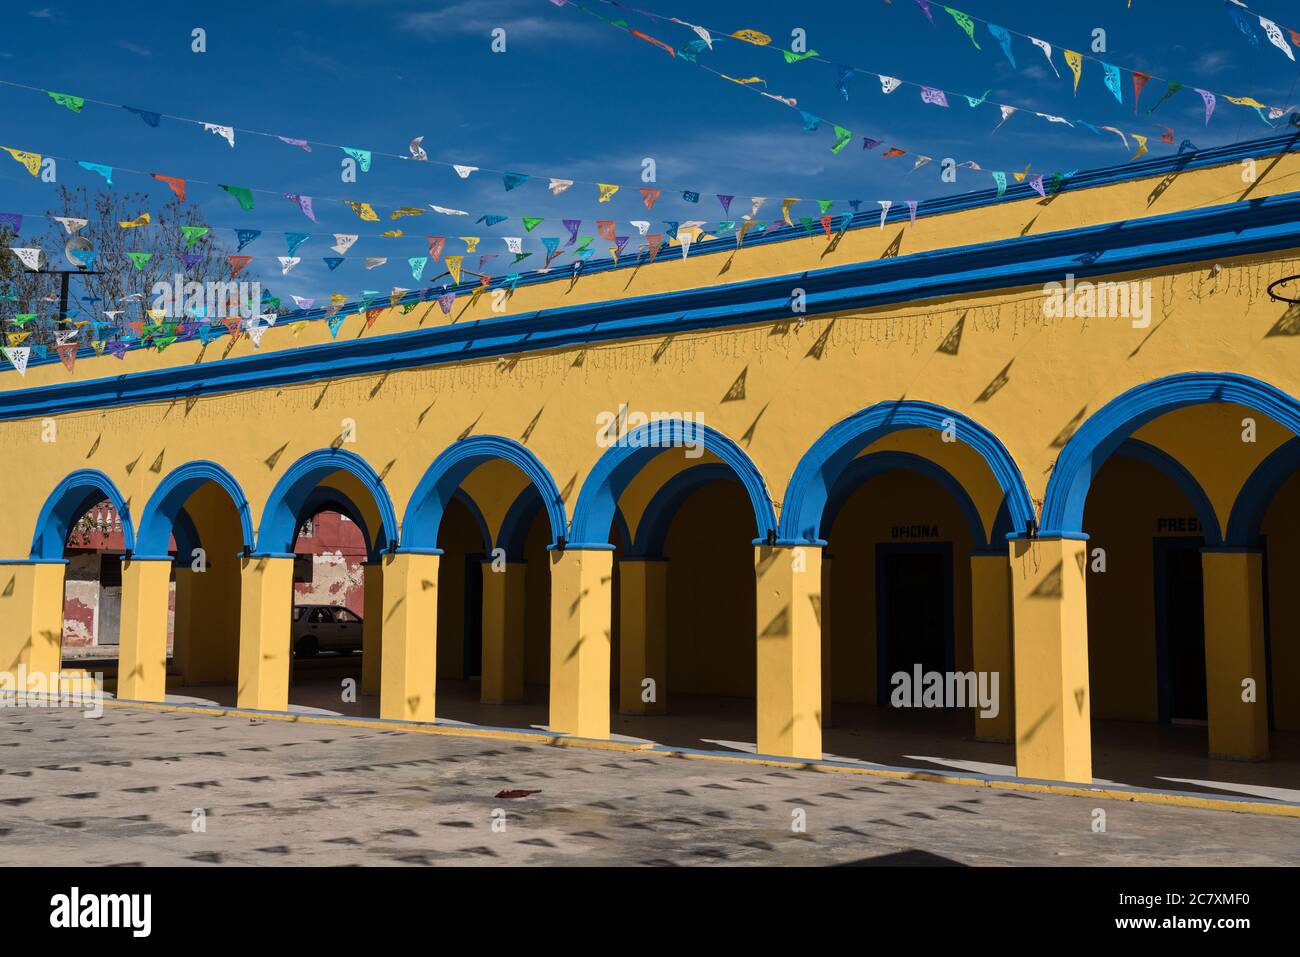 Die bunt bemalten Bögen des Stadtpalastes oder des Rathauses in Chapab de las Flores in Yucatan, Mexiko. Stockfoto